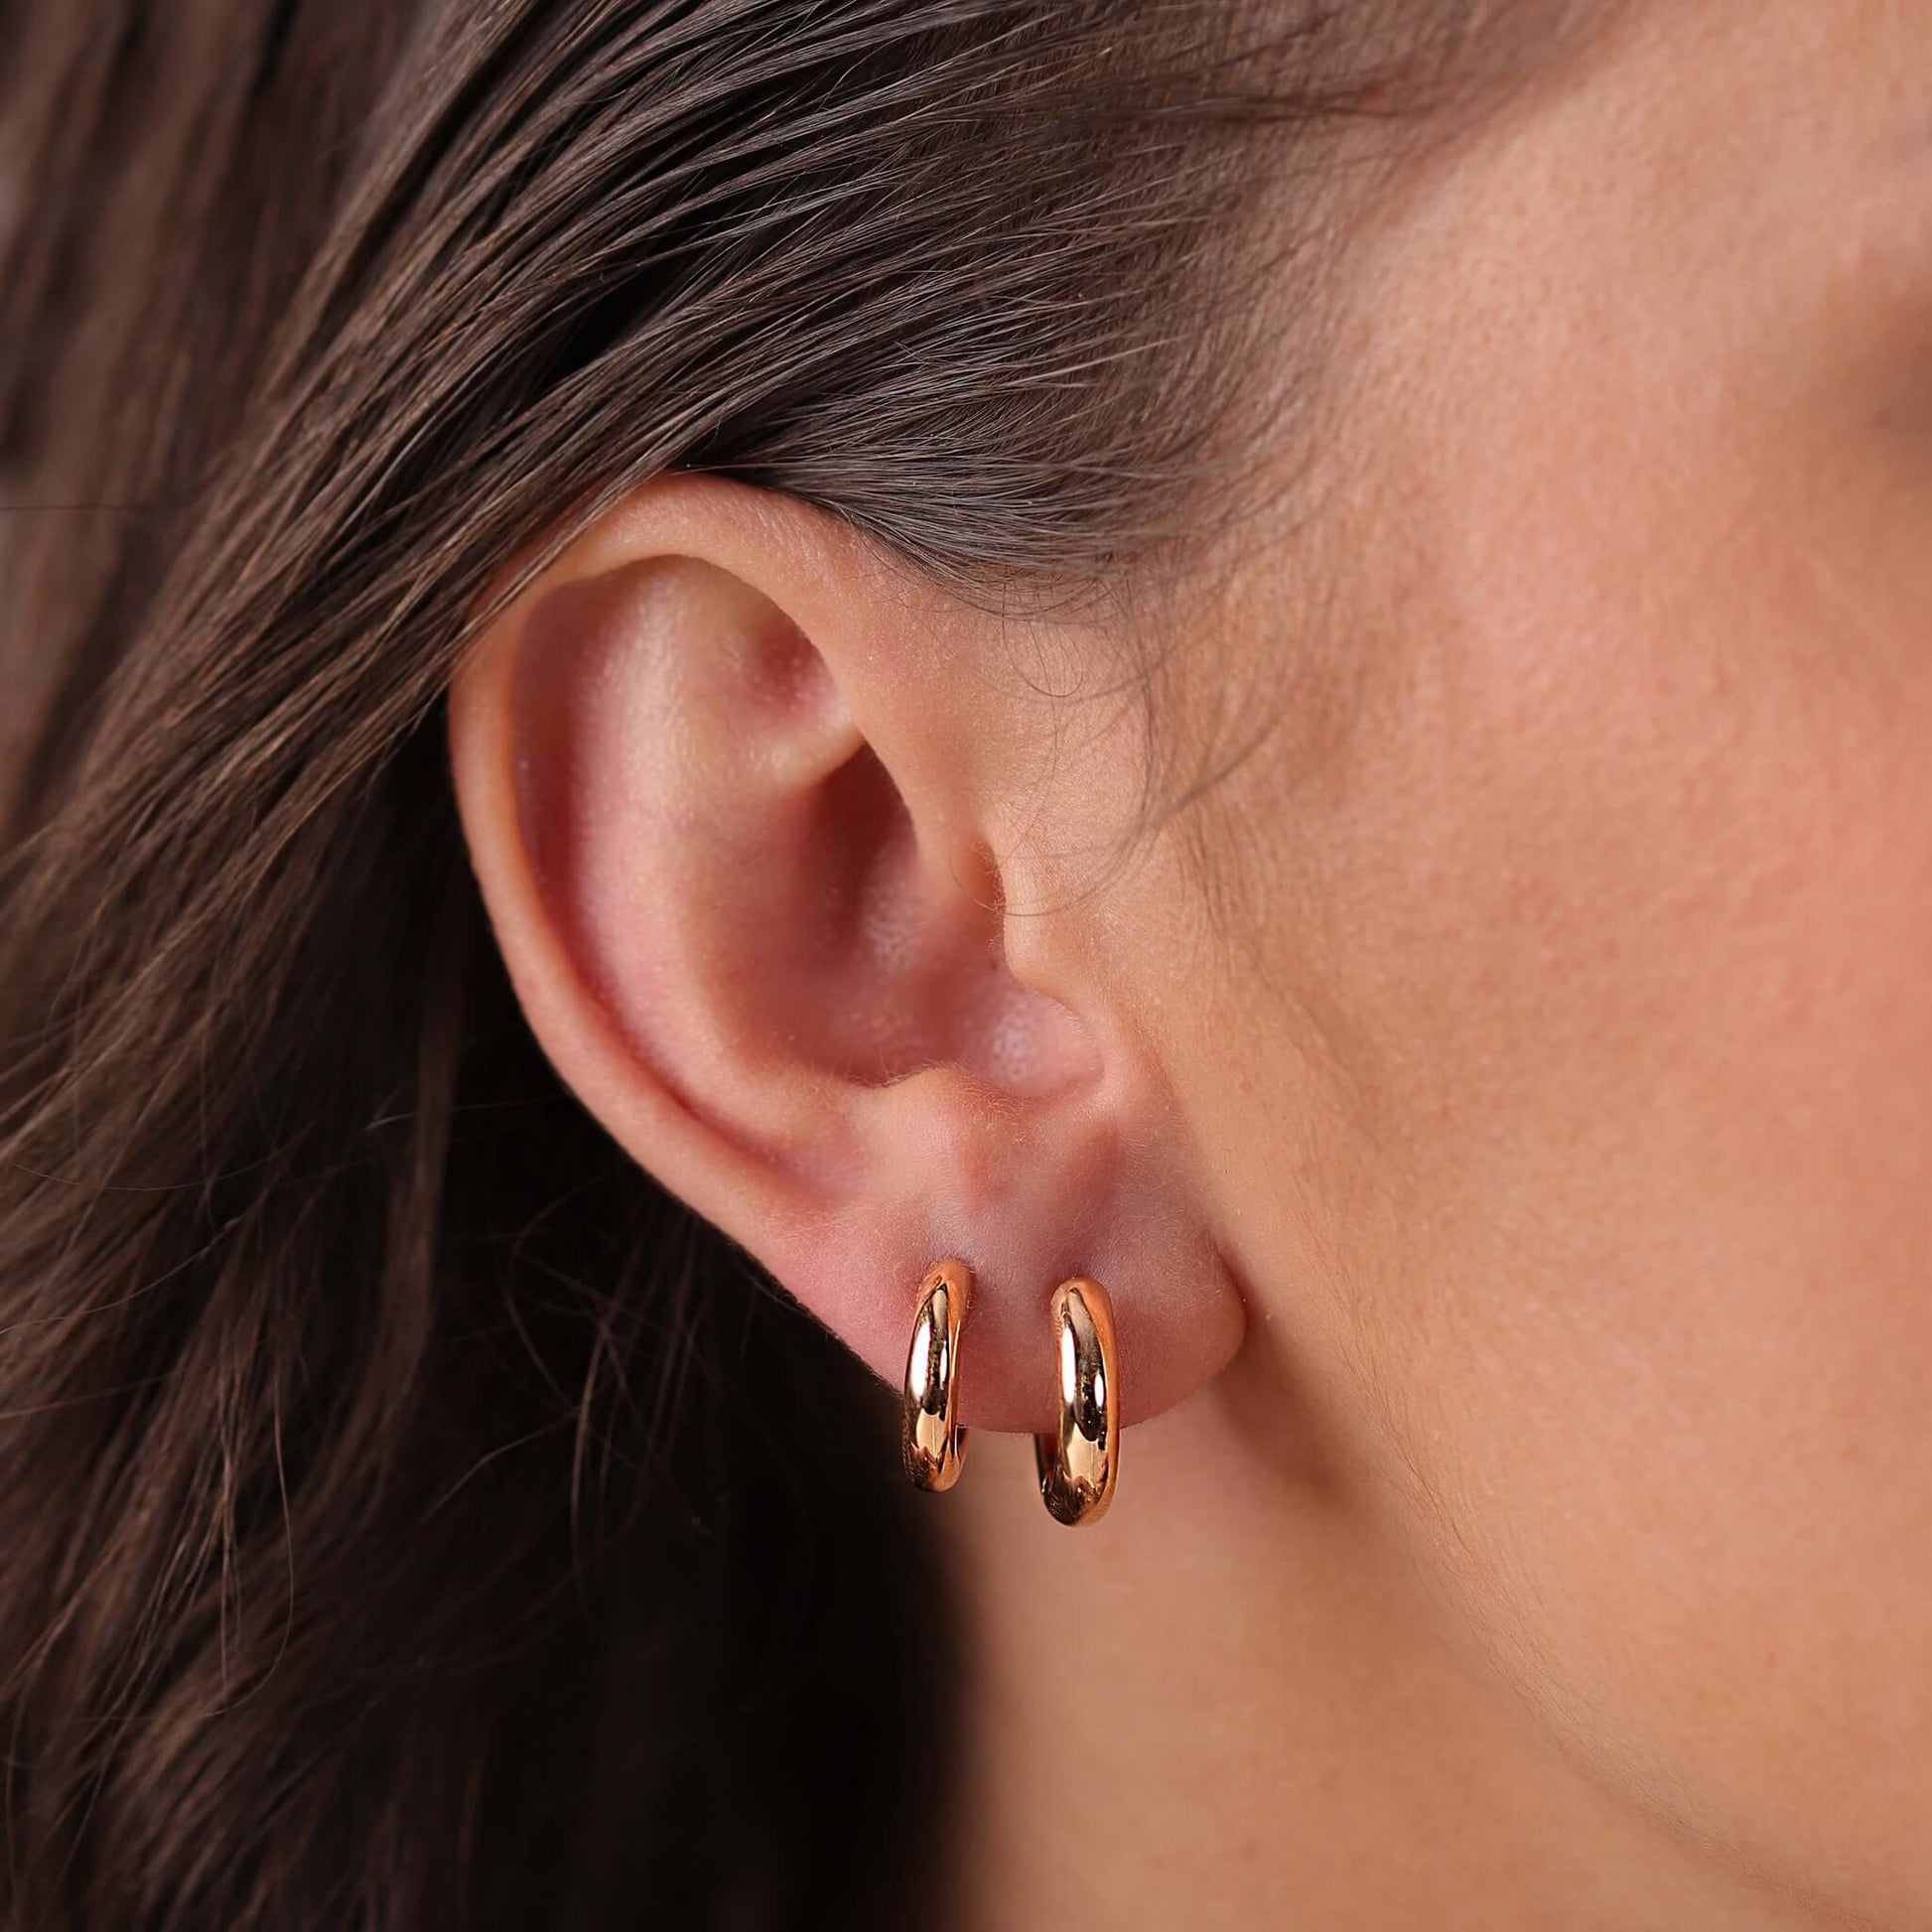 Jewelry Goldens Hoops | Small Gold Earrings | 14K - earrings Zengoda Shop online from Artisan Brands